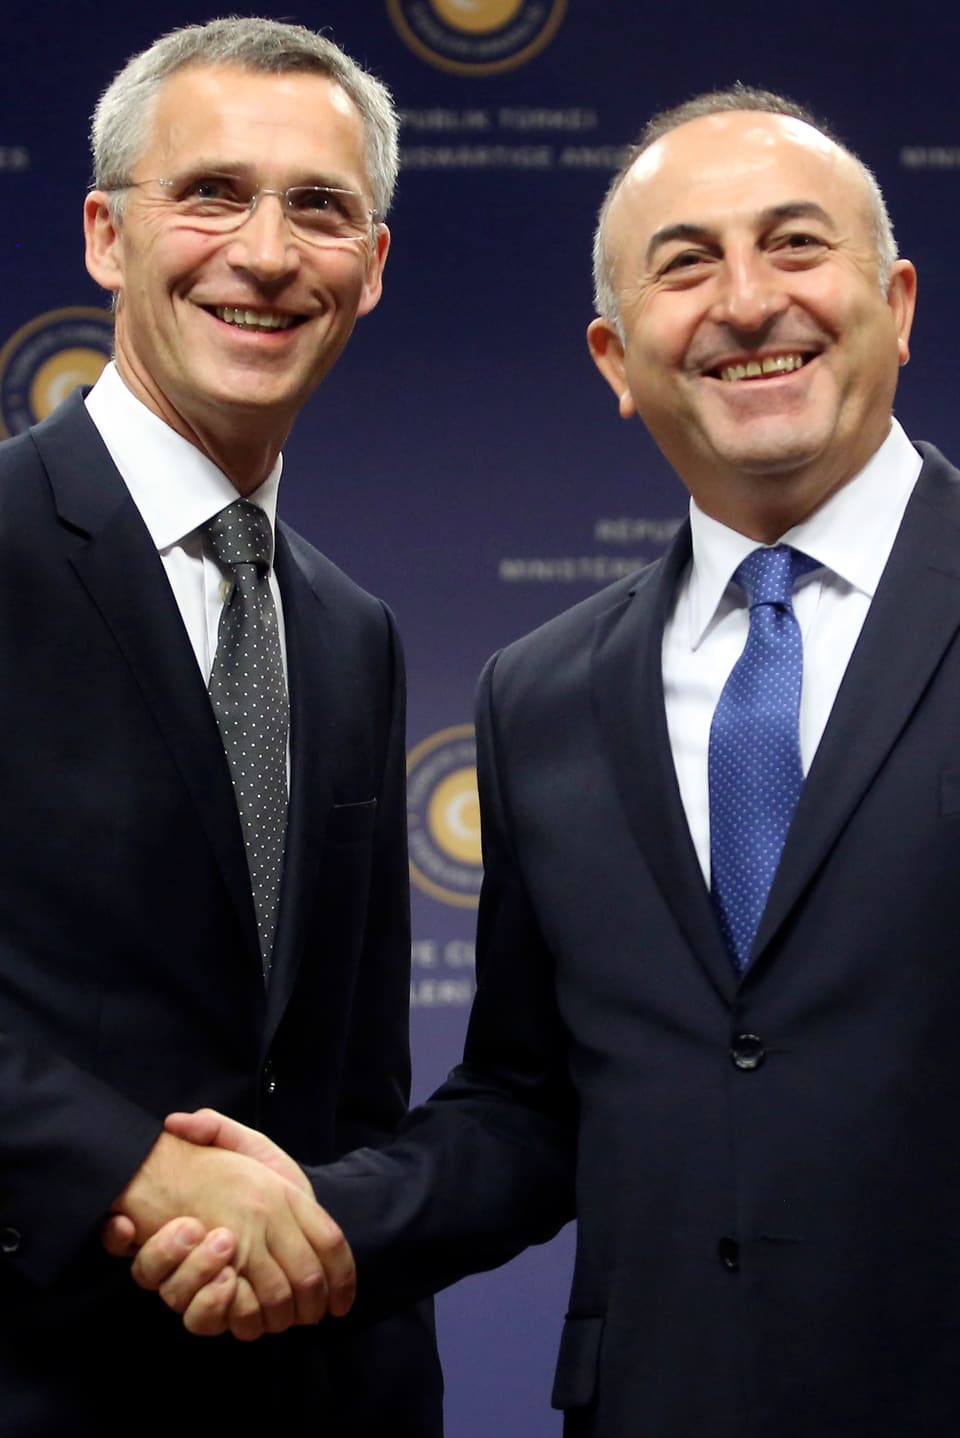 NATO-Generalsekretär Stoltenberg und Aussenminister Cavusoglu geben sich die Hand